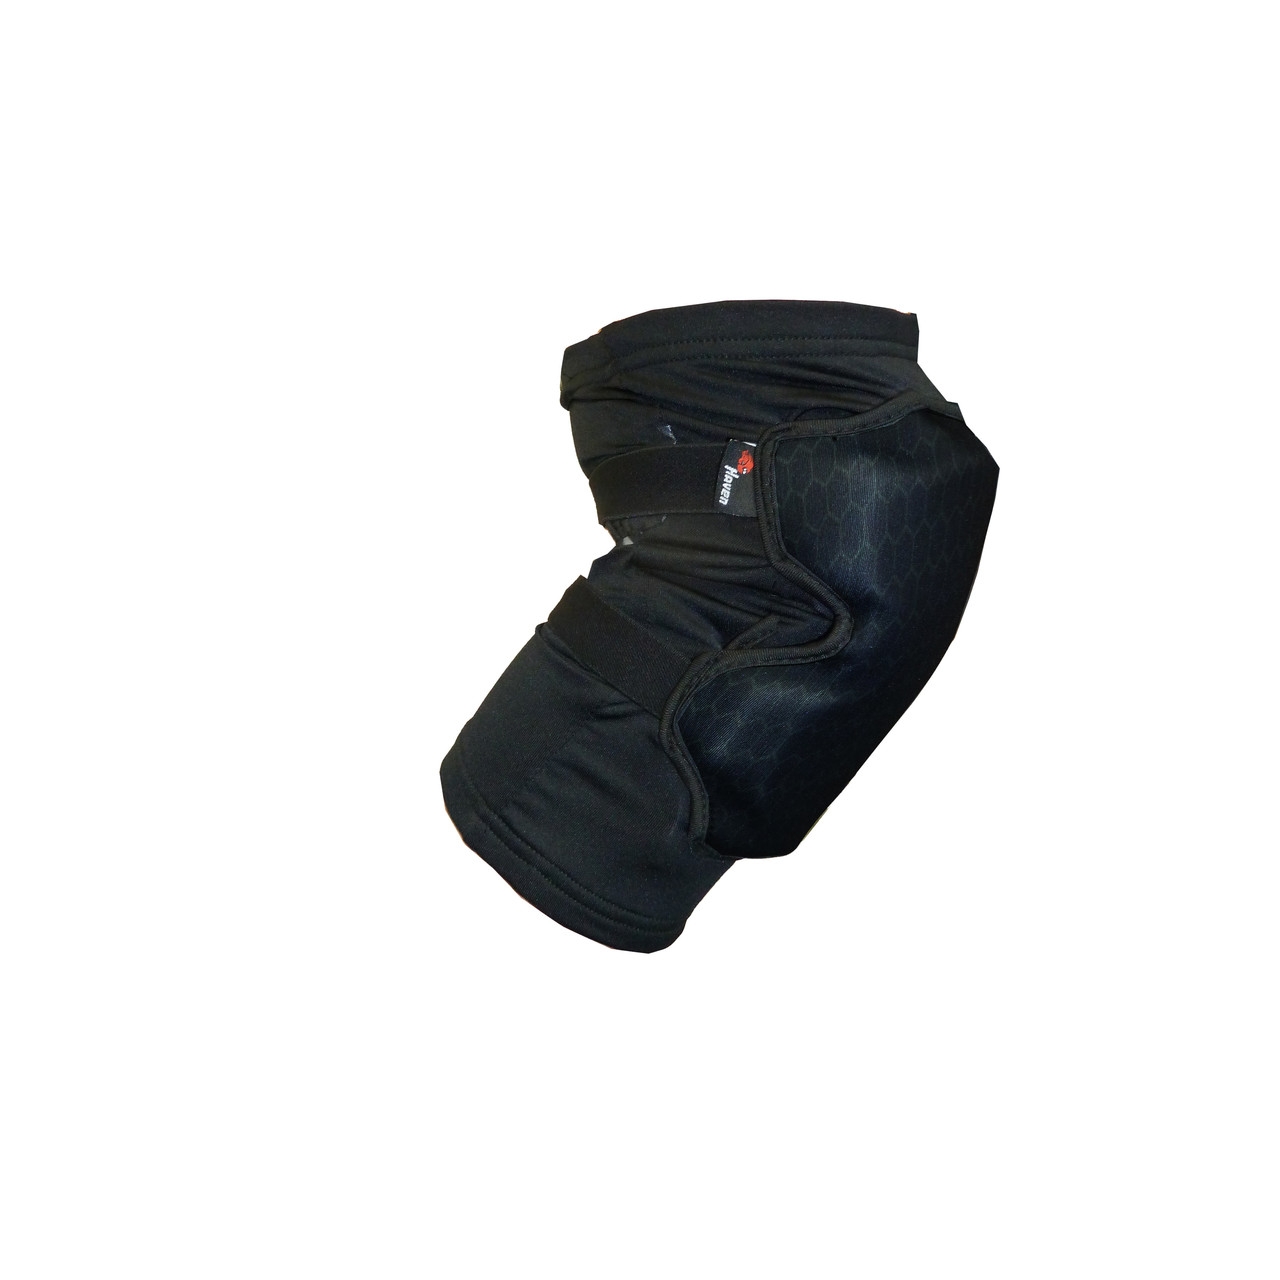 Chrániče kolen Haven Guardian Knee II - černé, XS/S